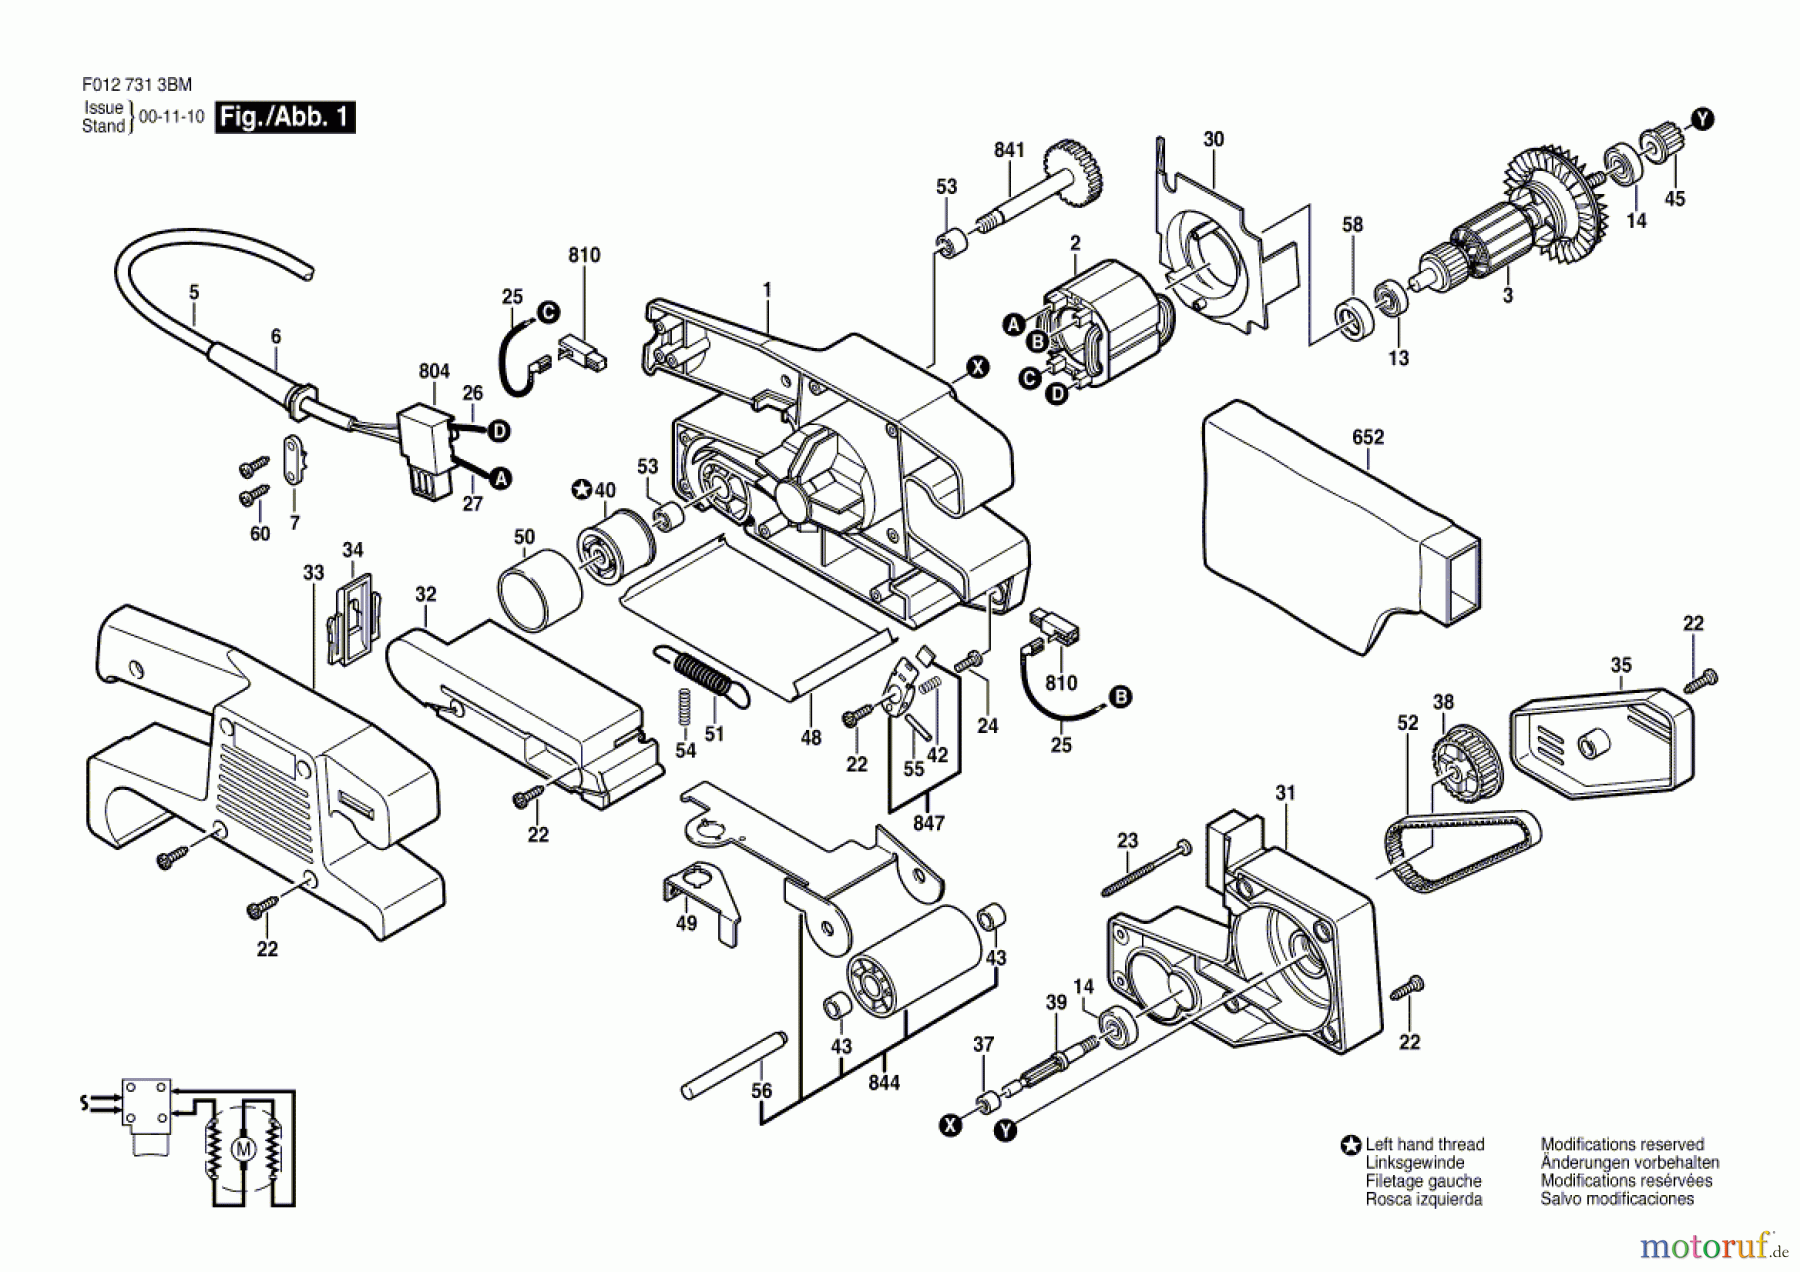  Bosch Werkzeug Bandschleifer 7313 Seite 1